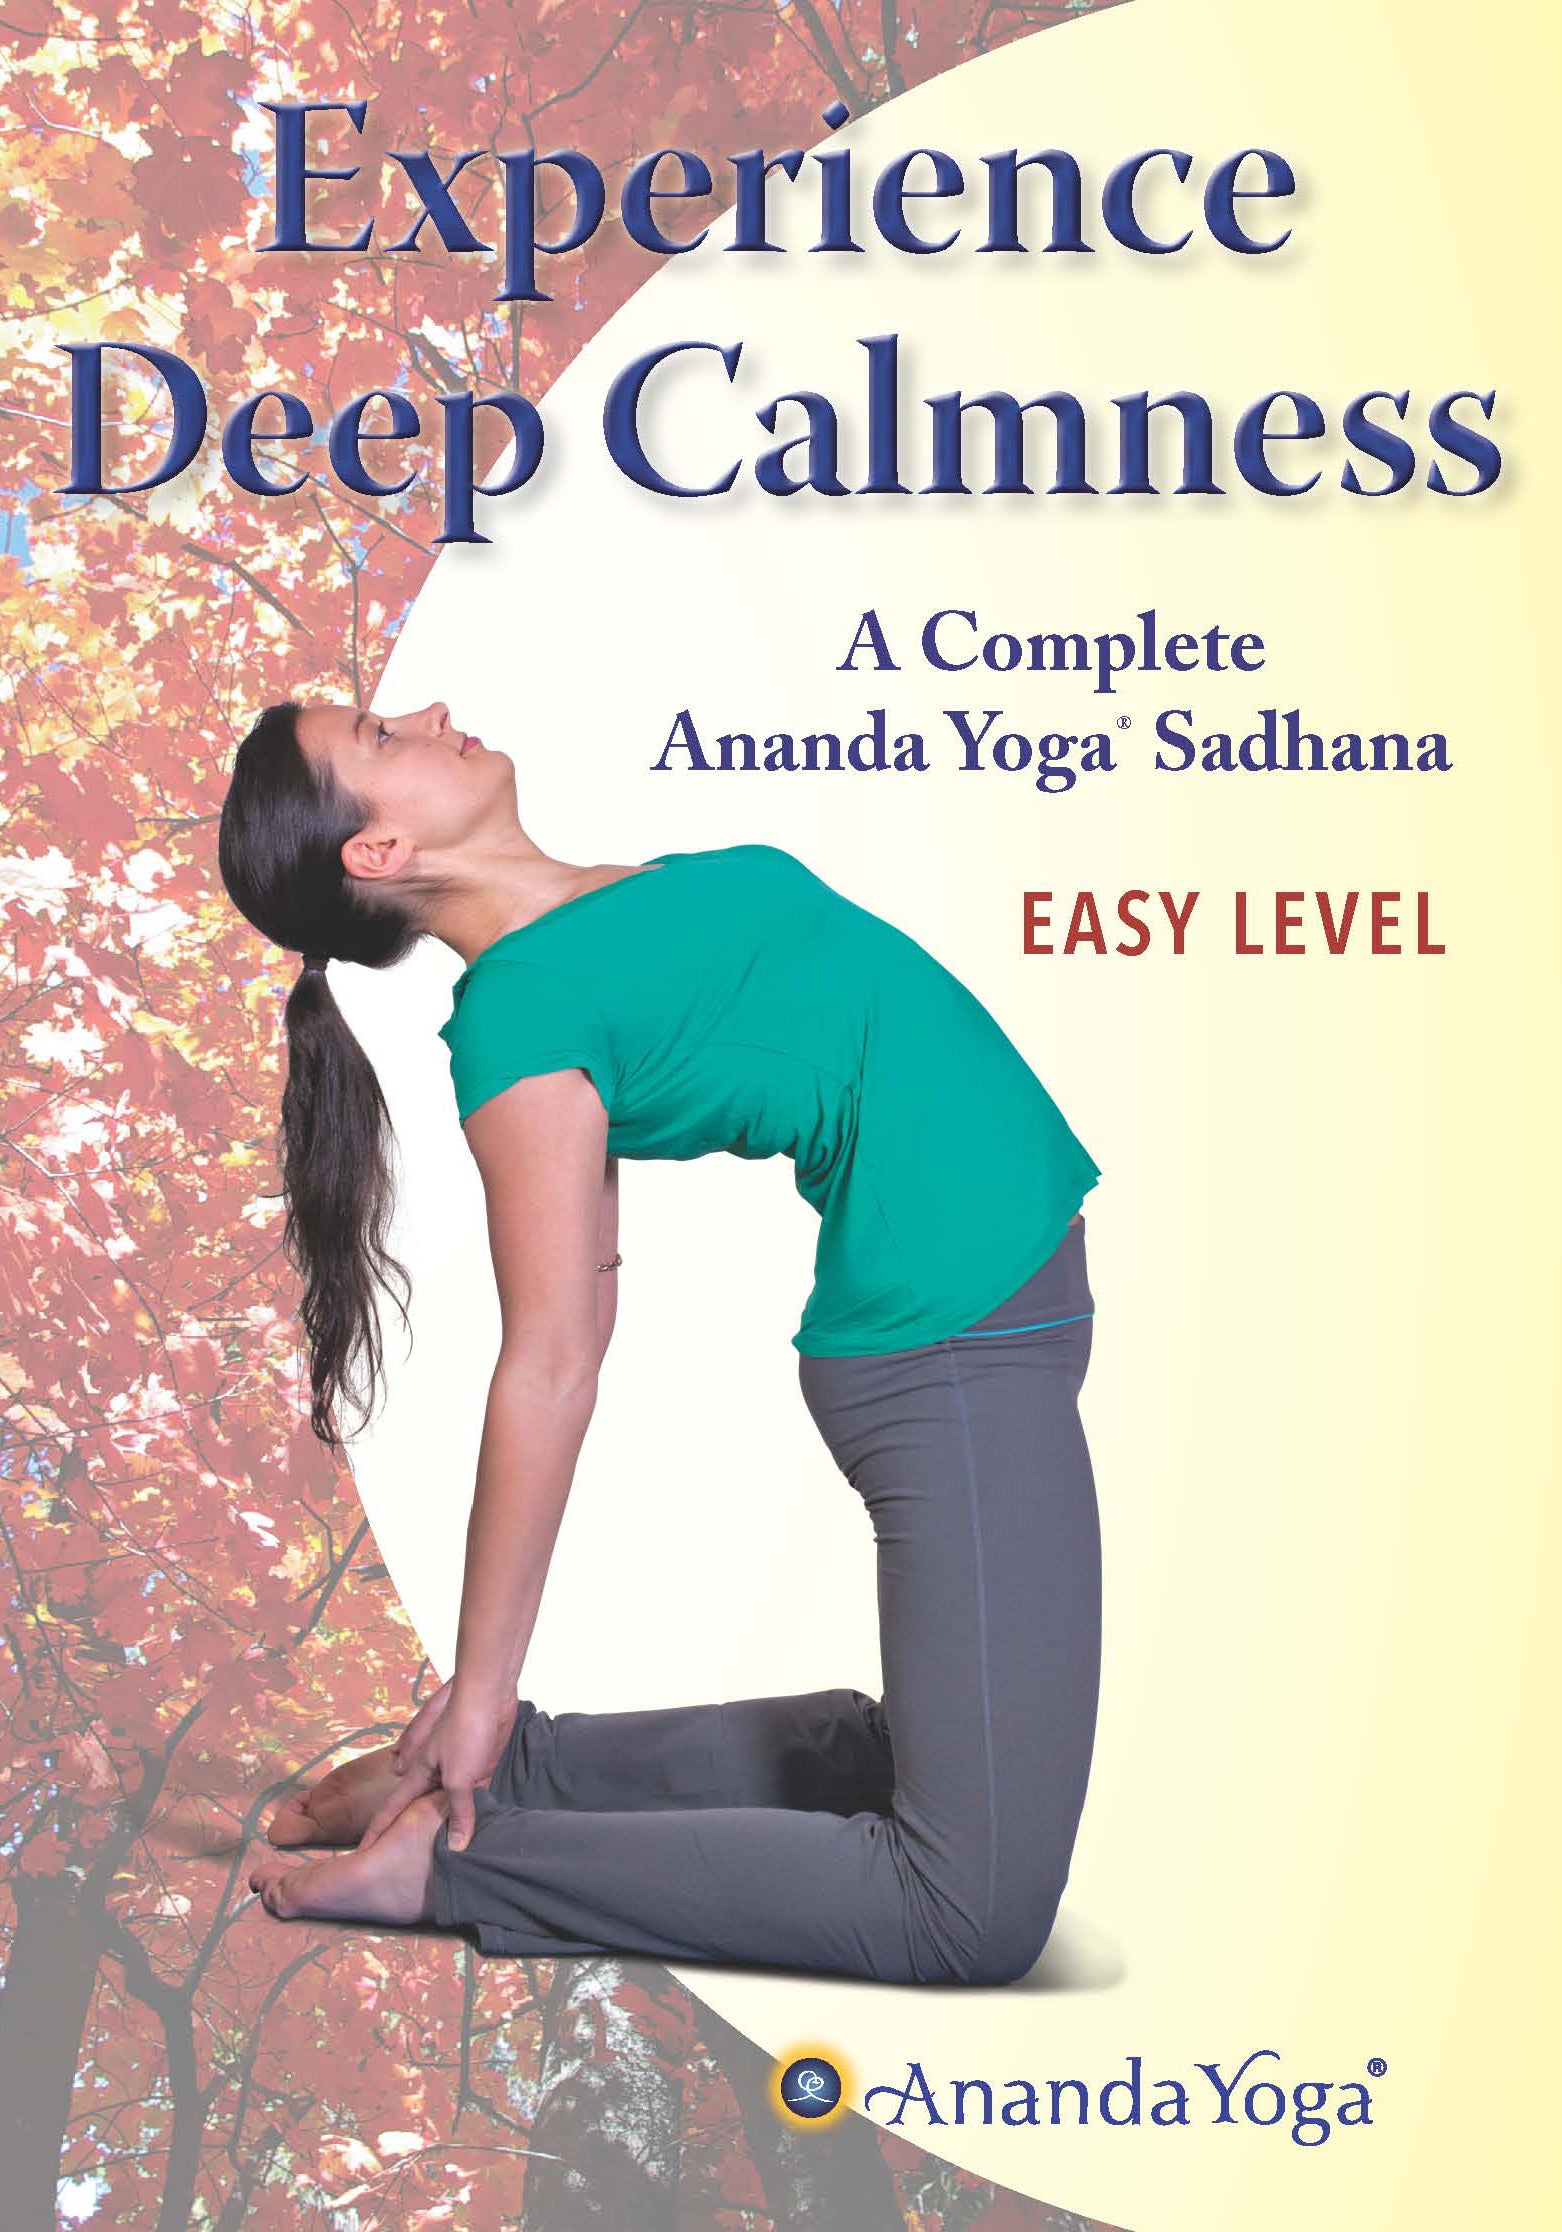 Experience Deep Calmness DVD